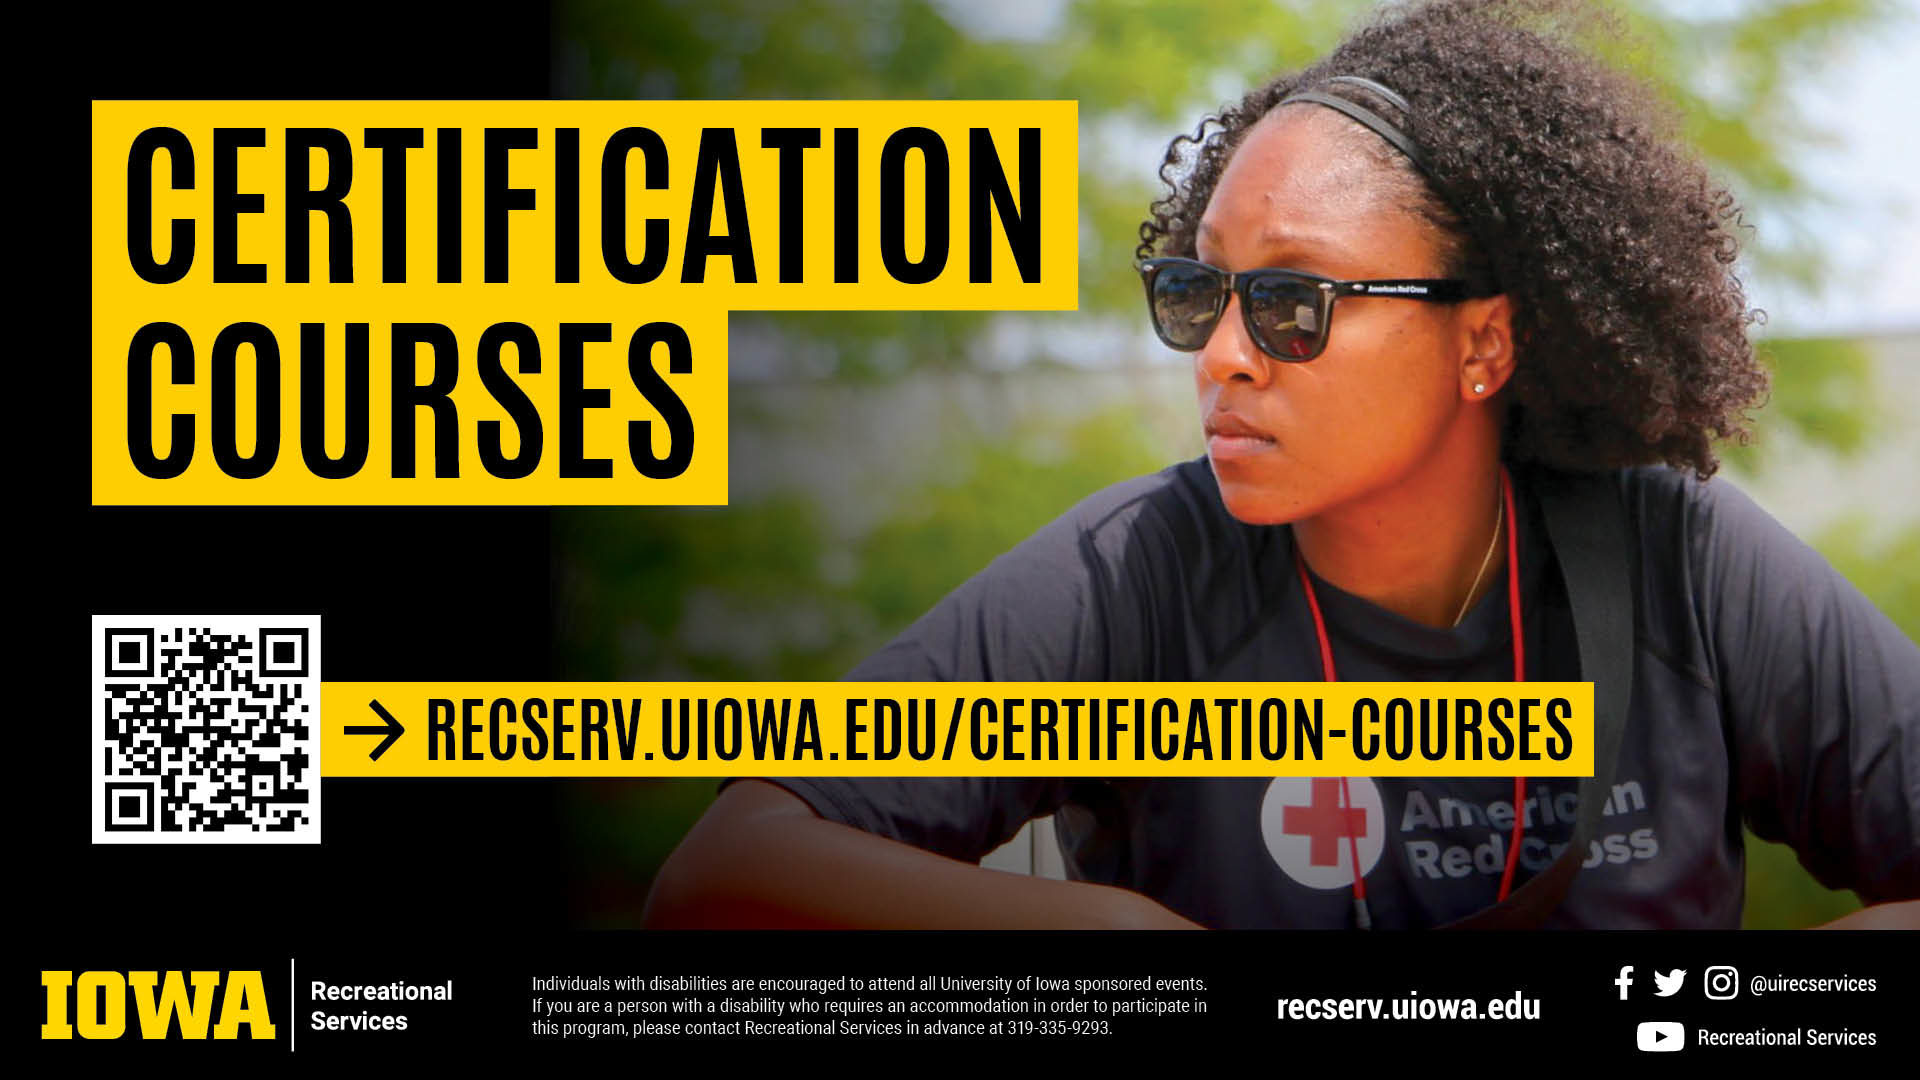 recserv.uiowa.edu/certification-courses